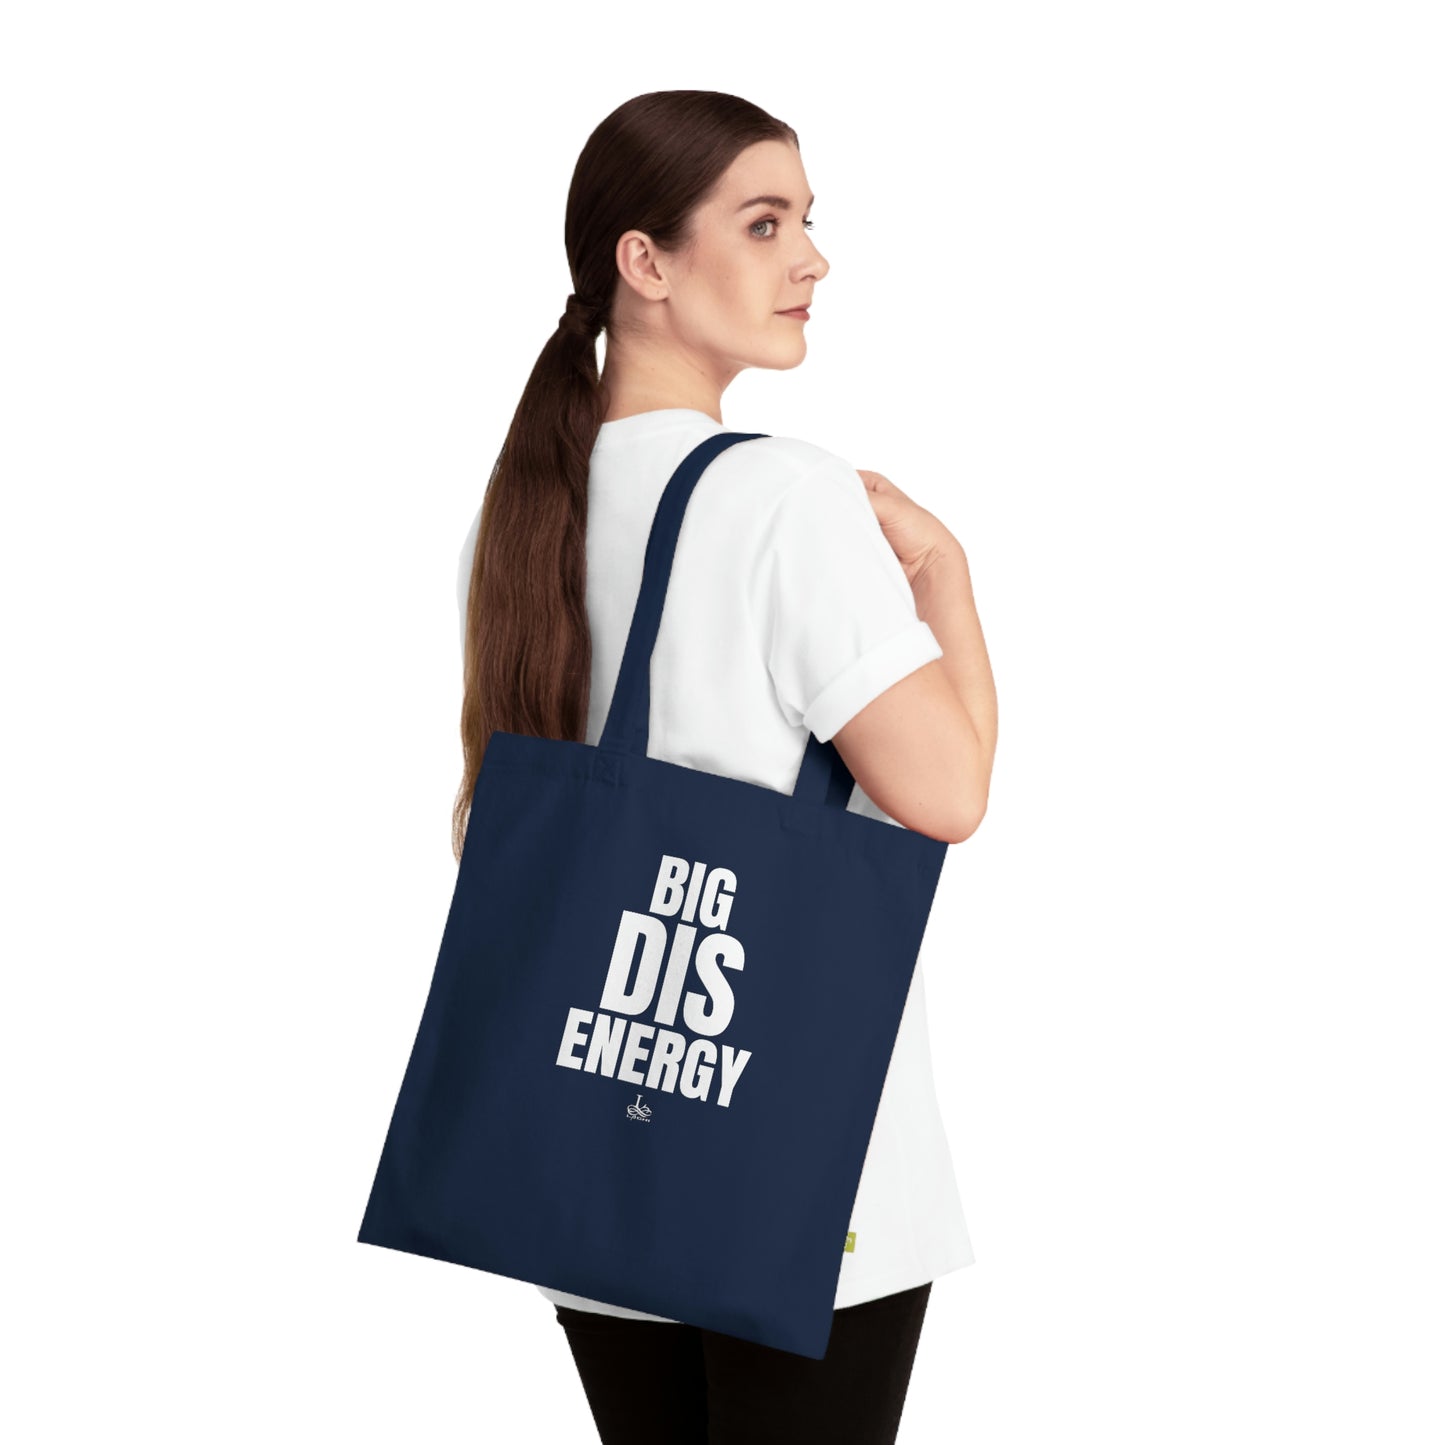 Big DIS energy! - Organic Cotton Tote Bag